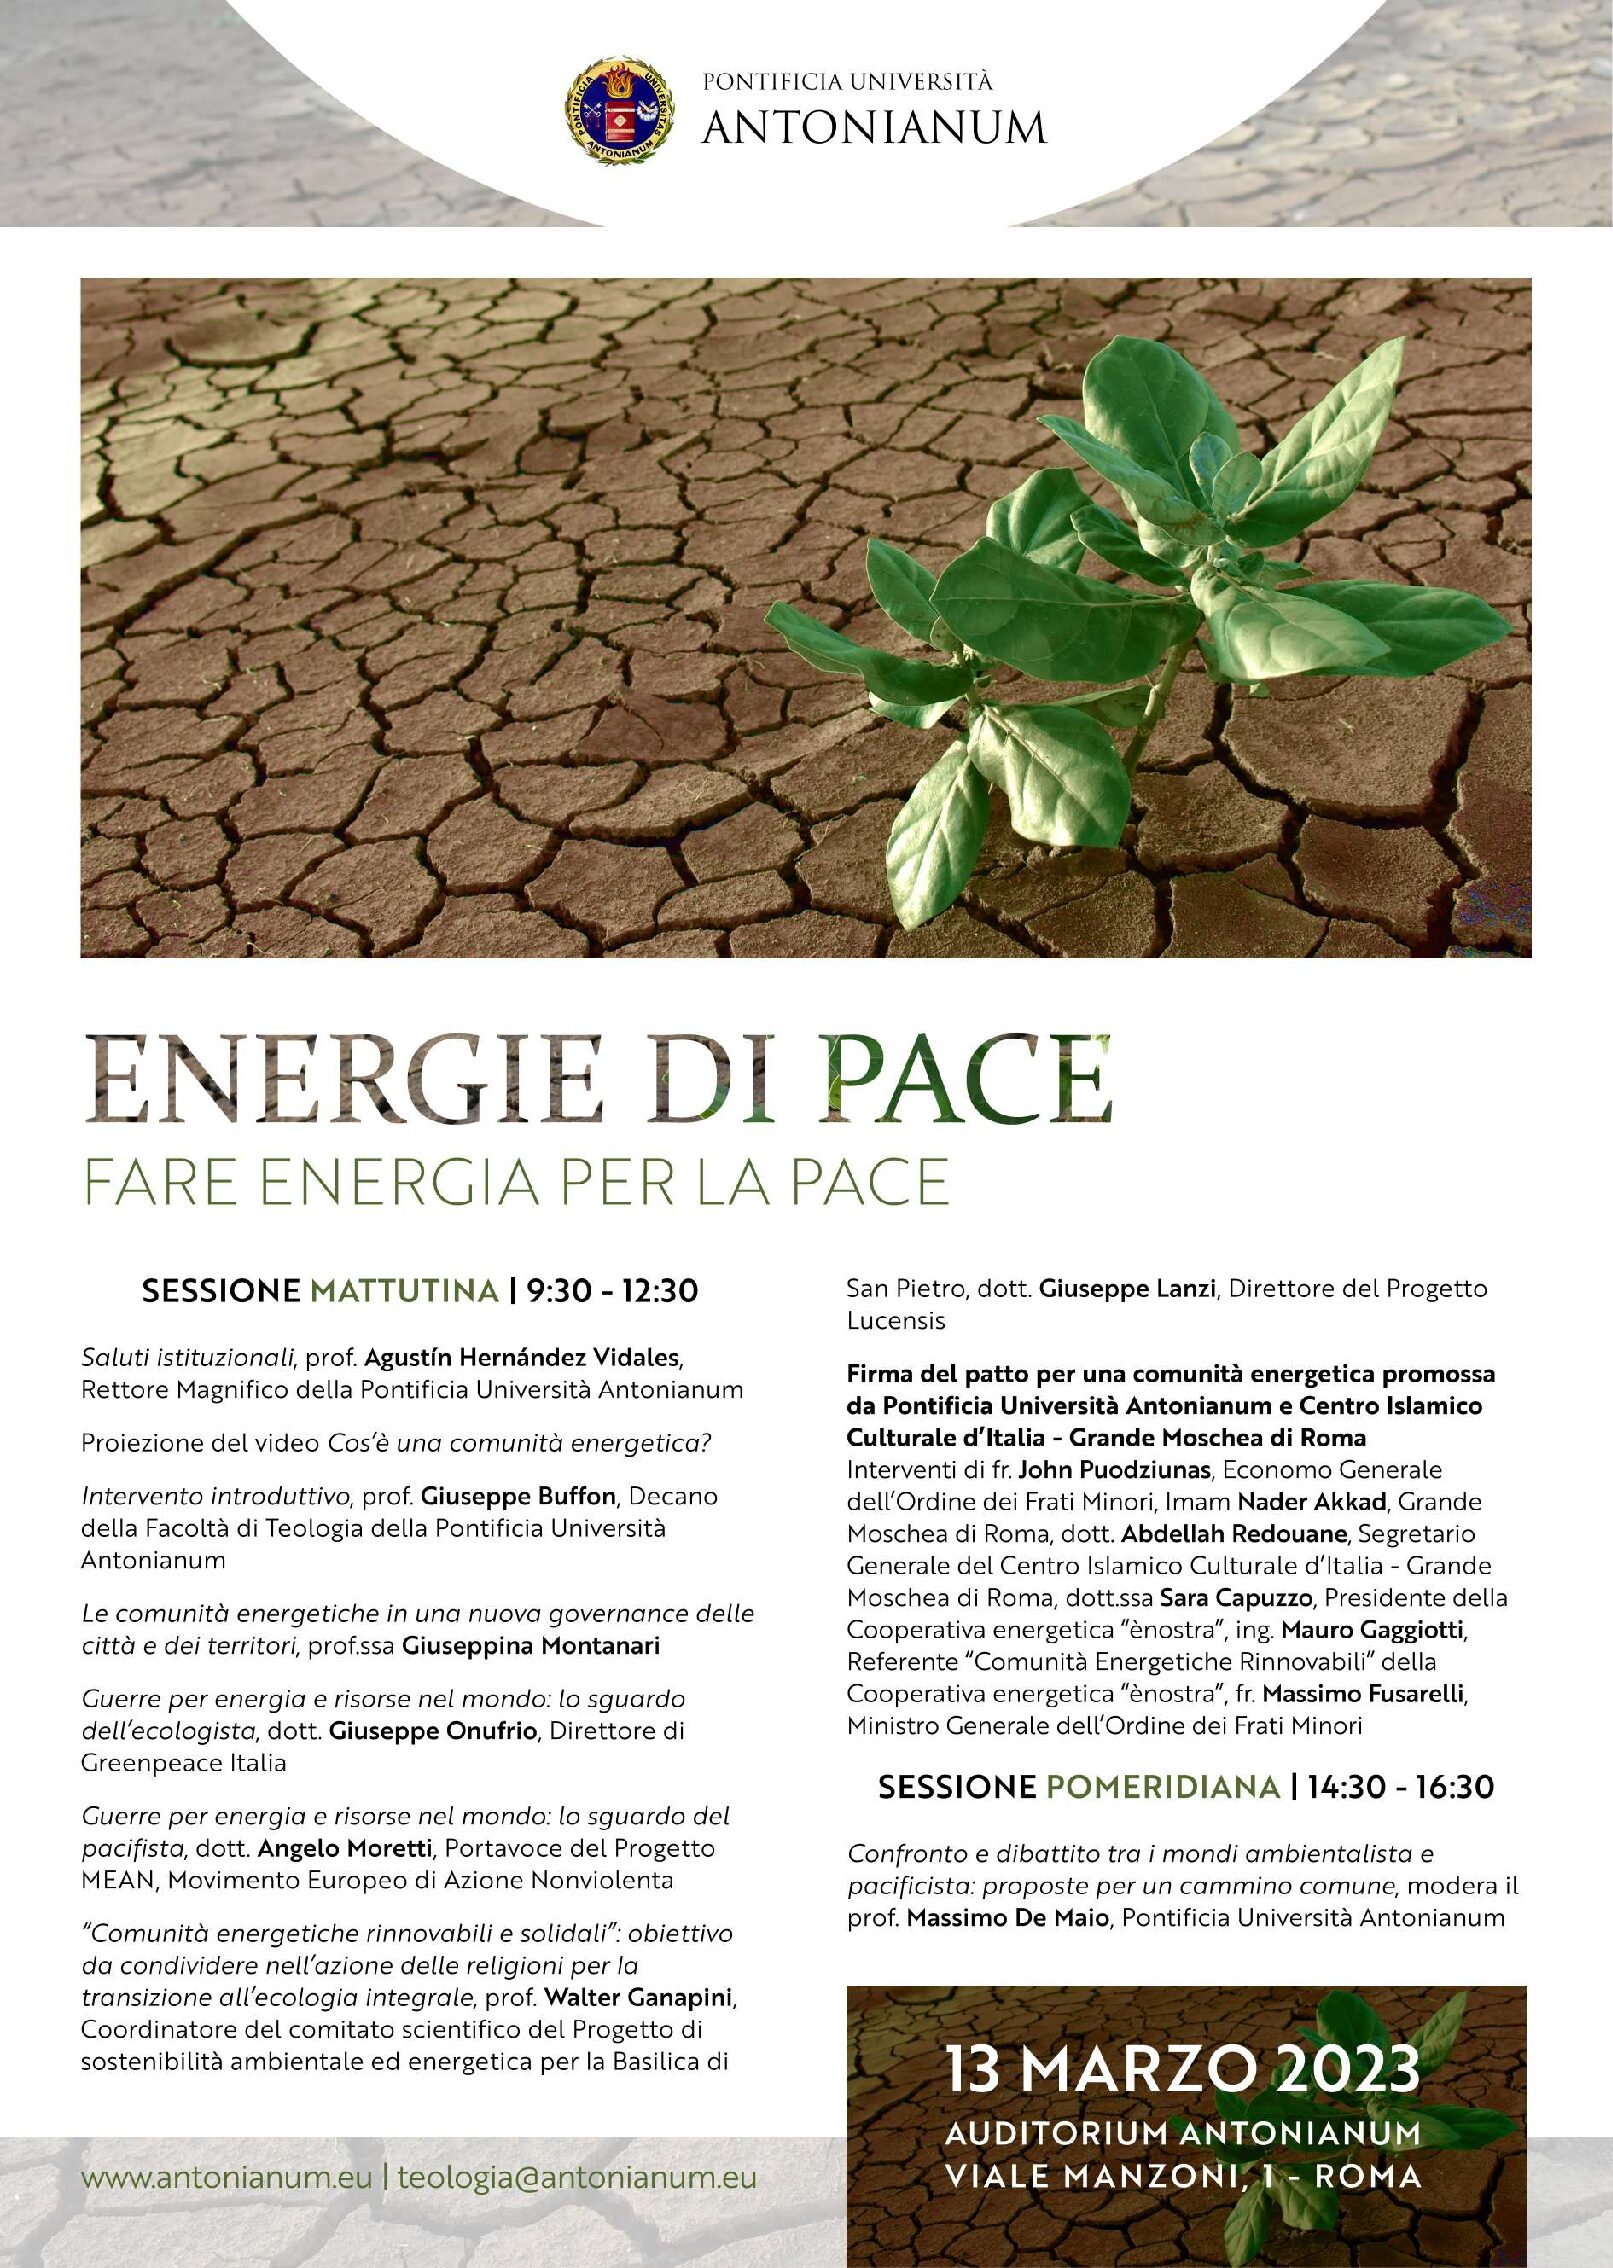 Roma, “Energia di pace. Fare energia per la pace” Roma, 13 marzo, Pontificia Università Antonianum